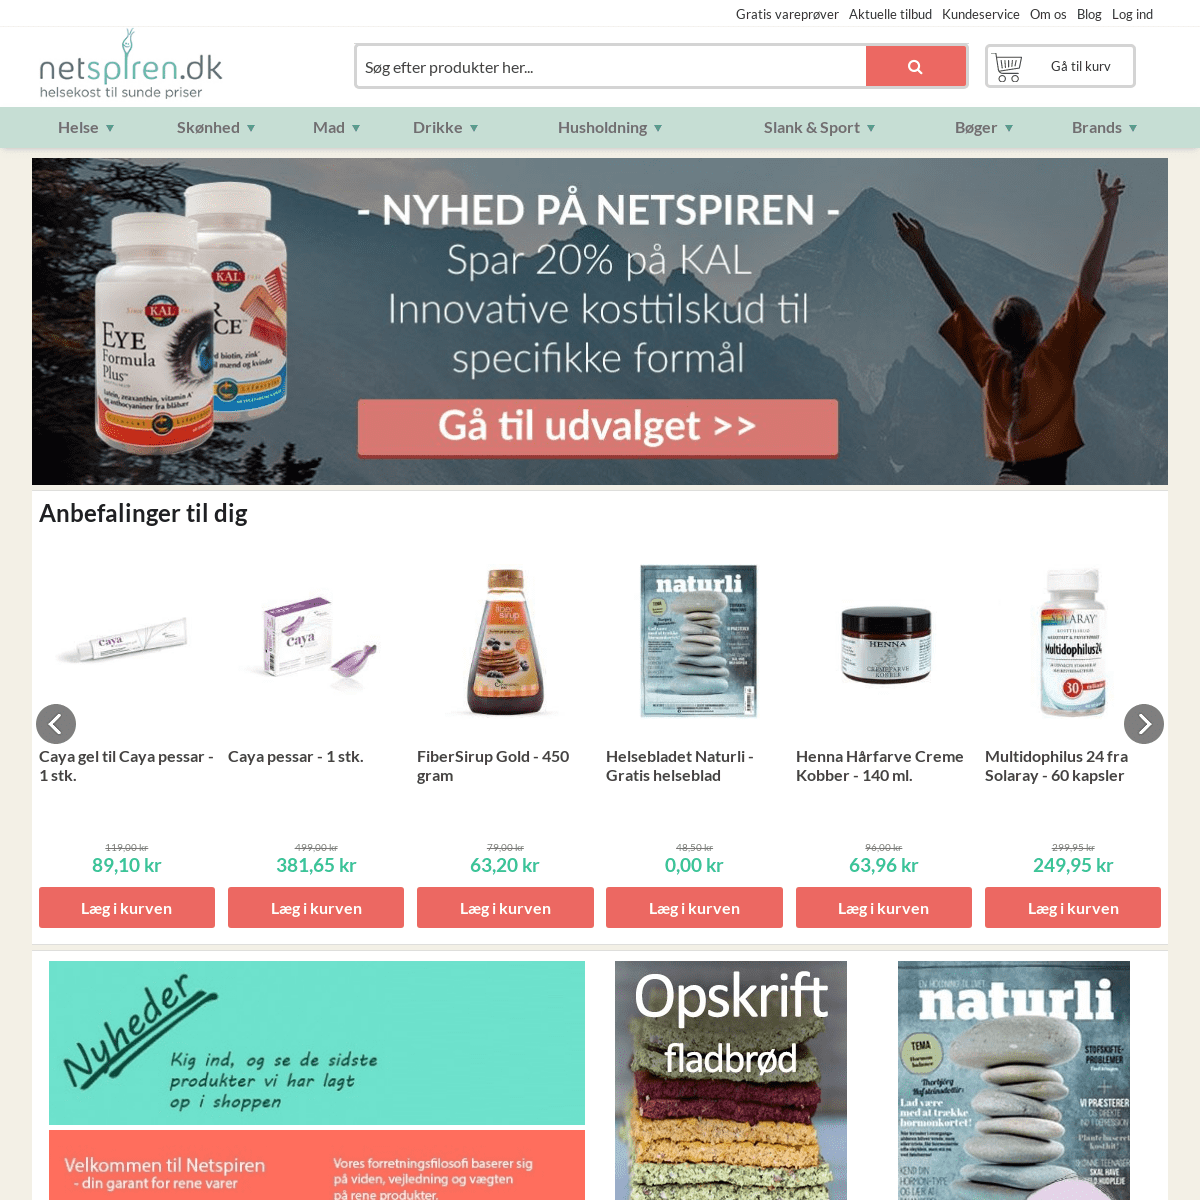 Netspiren.dk | Helsekost og naturlig pleje nøje udvalgt til dig